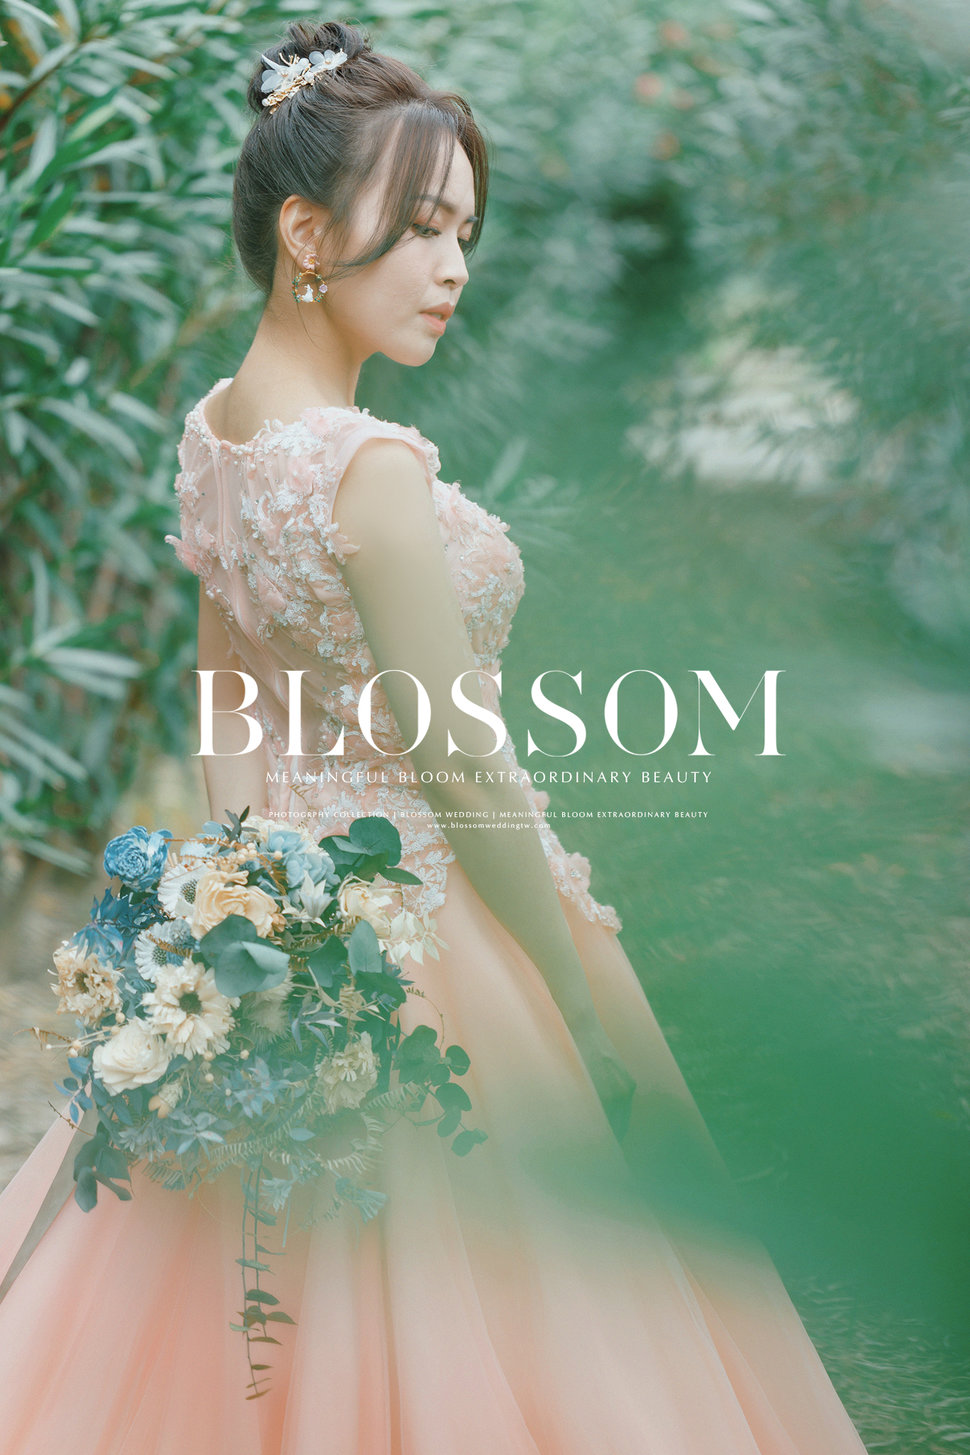 水花婚紗攝影工作室 Blossom Photoart Studio - 水花婚紗攝影工作室Blossom《結婚吧》